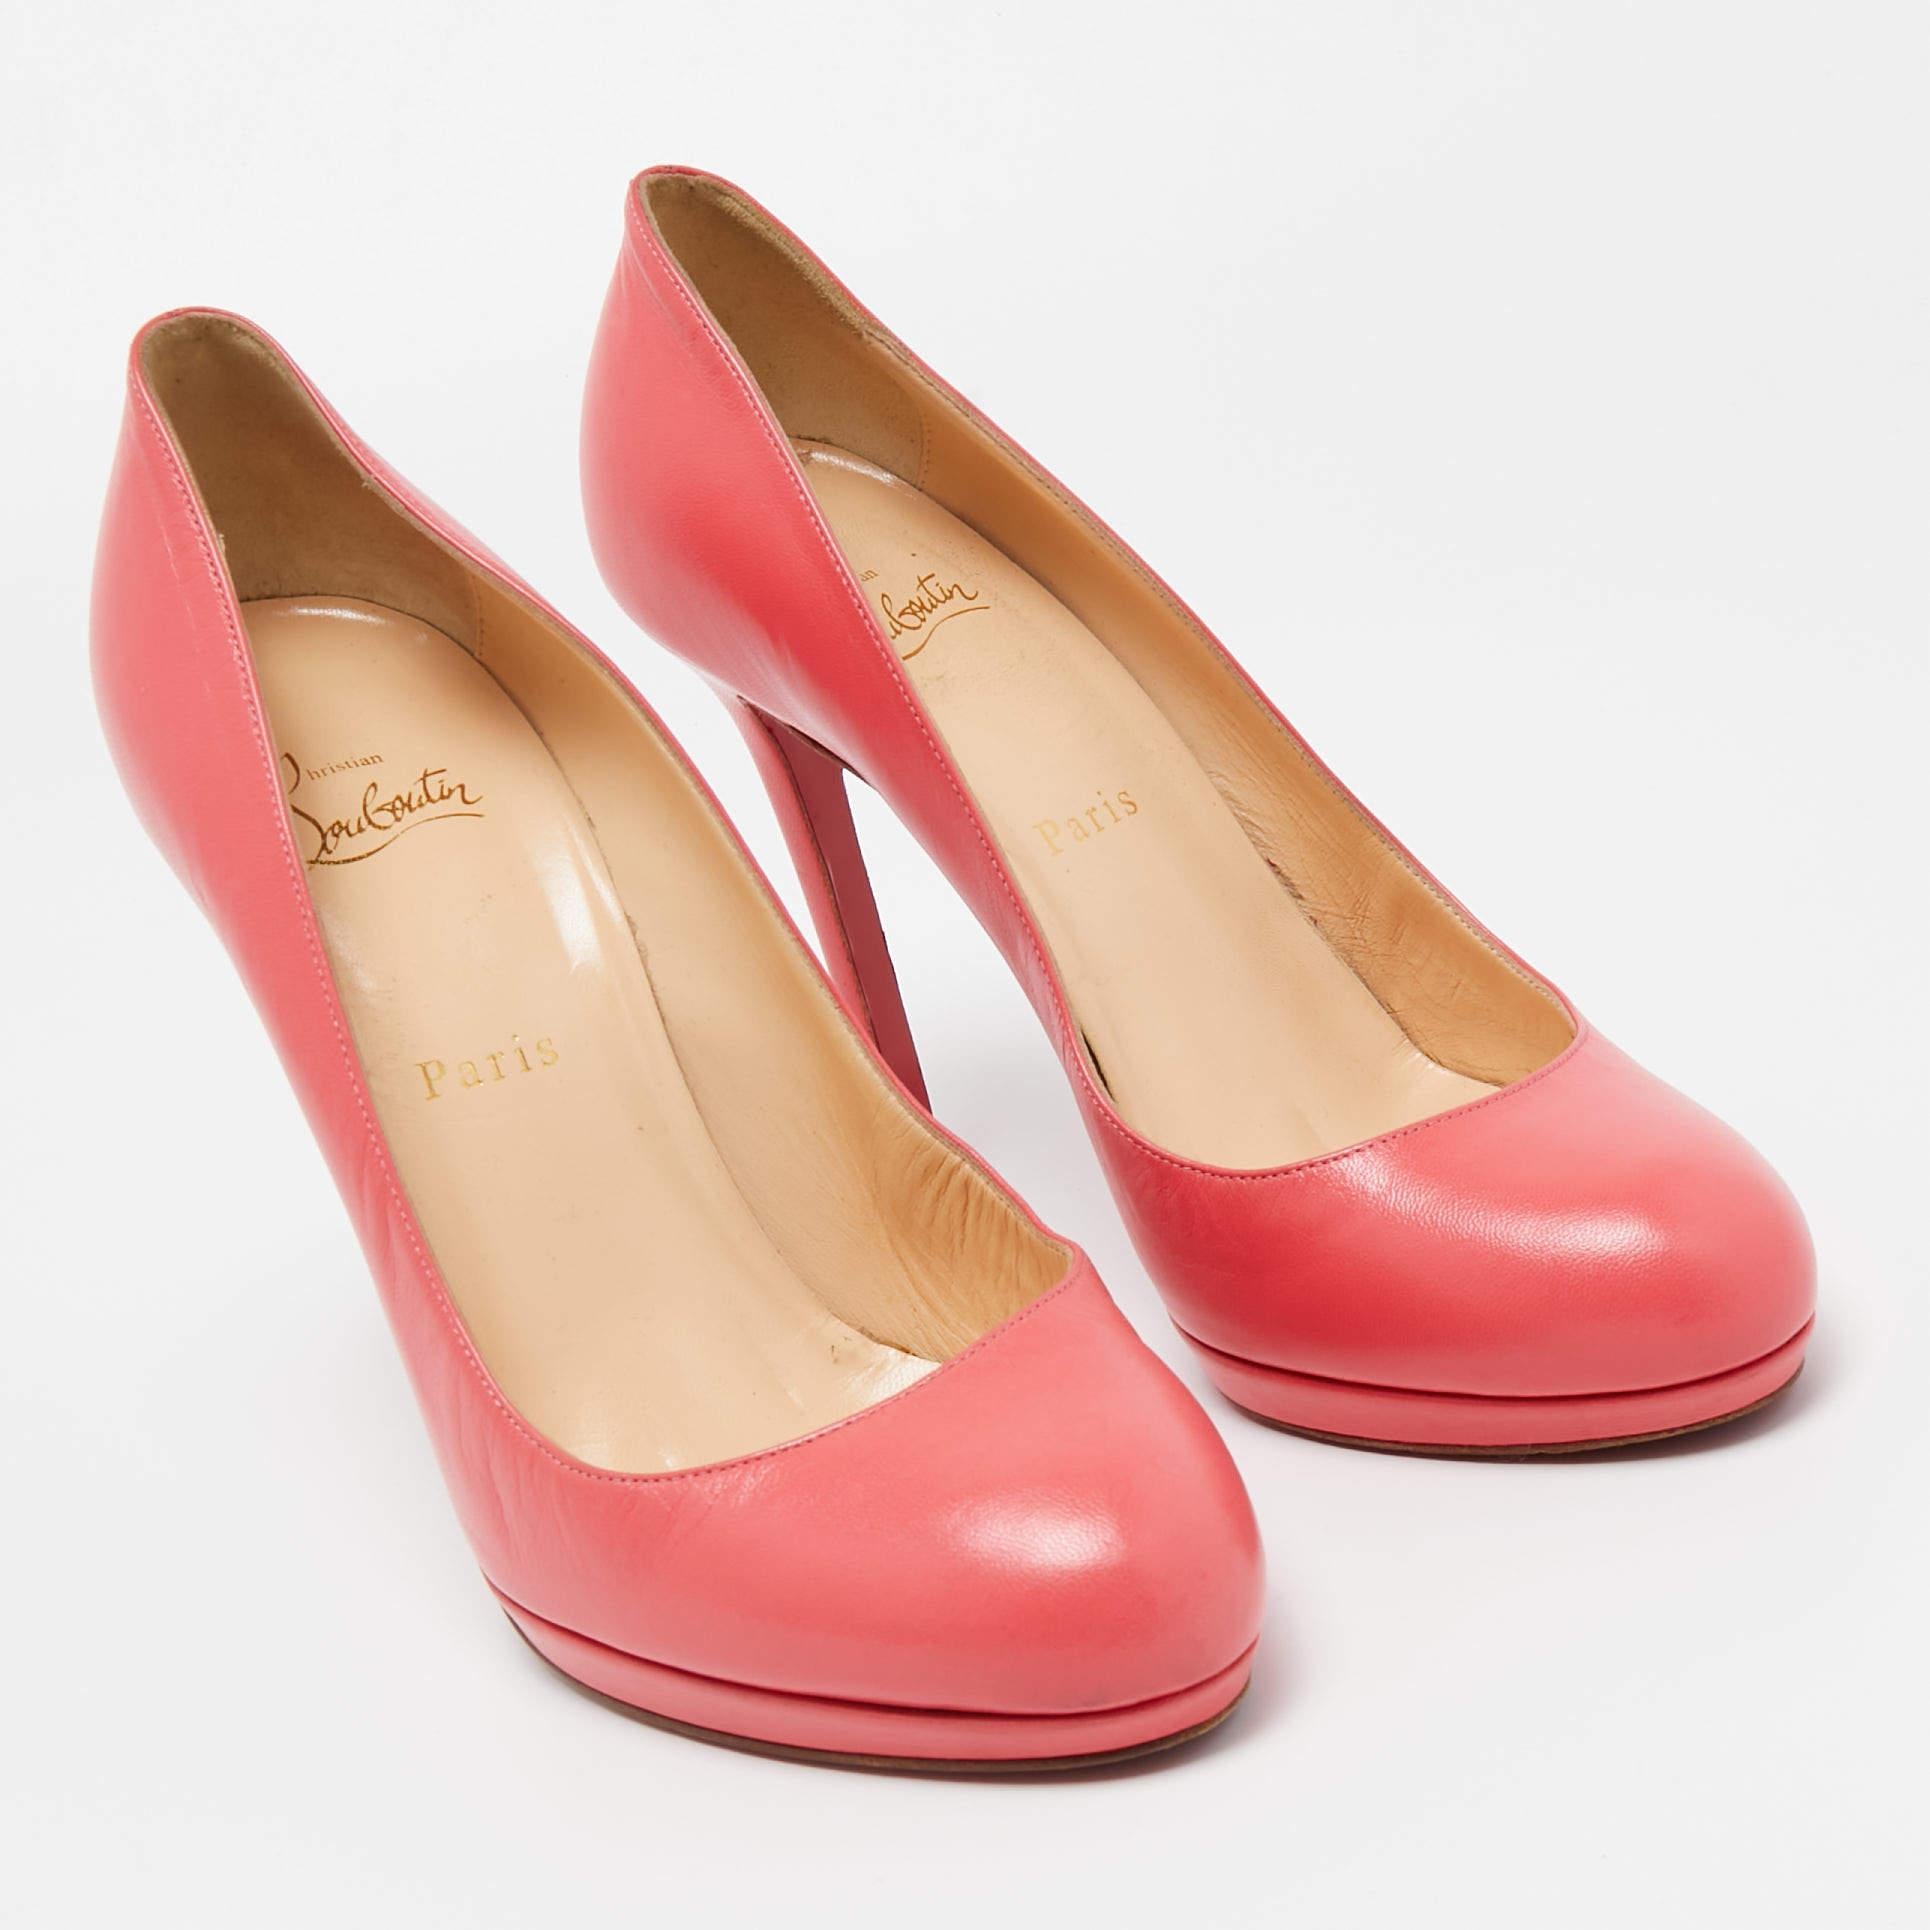 Parfaitement cousues et finies pour assurer un look et un ajustement élégants, ces chaussures roses Christian Louboutin sont un achat que vous aimerez afficher. Ils sont très beaux sur les pieds.

